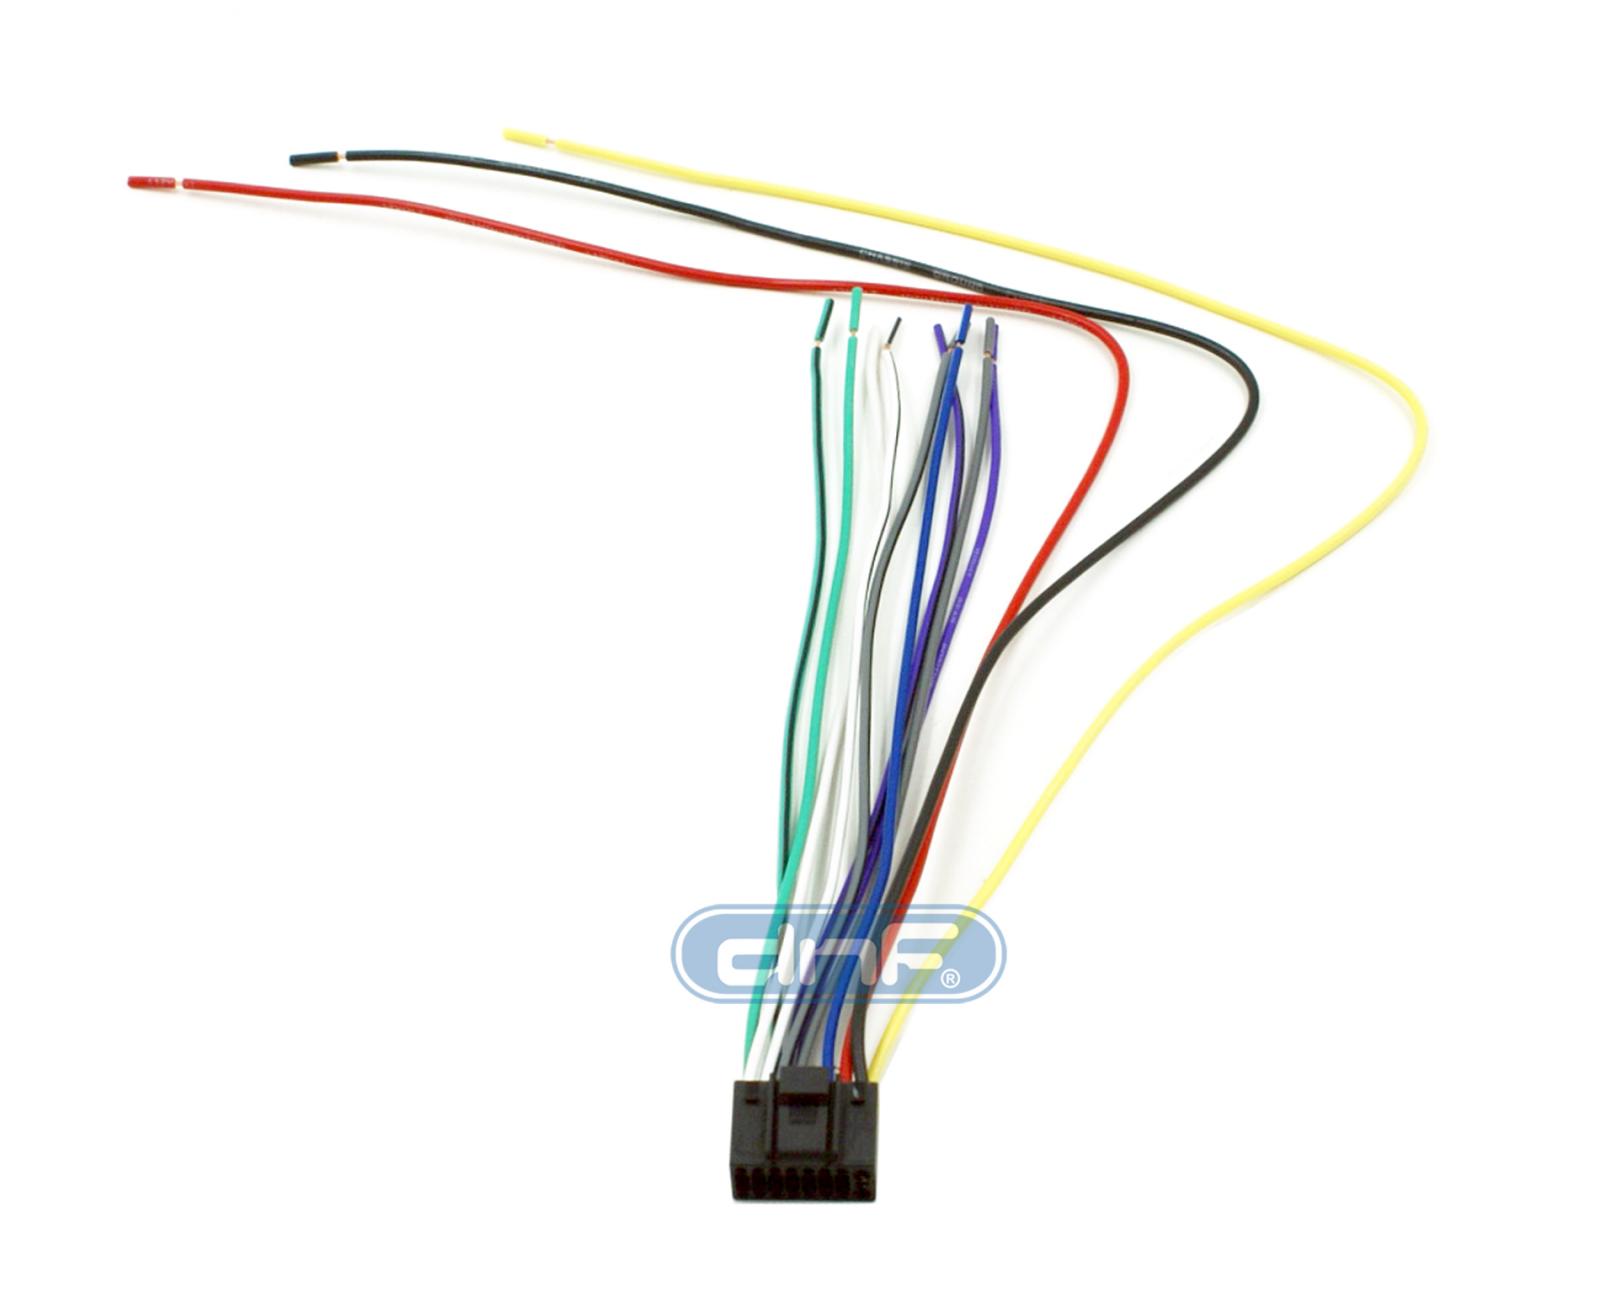 kenwood kdc mp232 wiring diagram